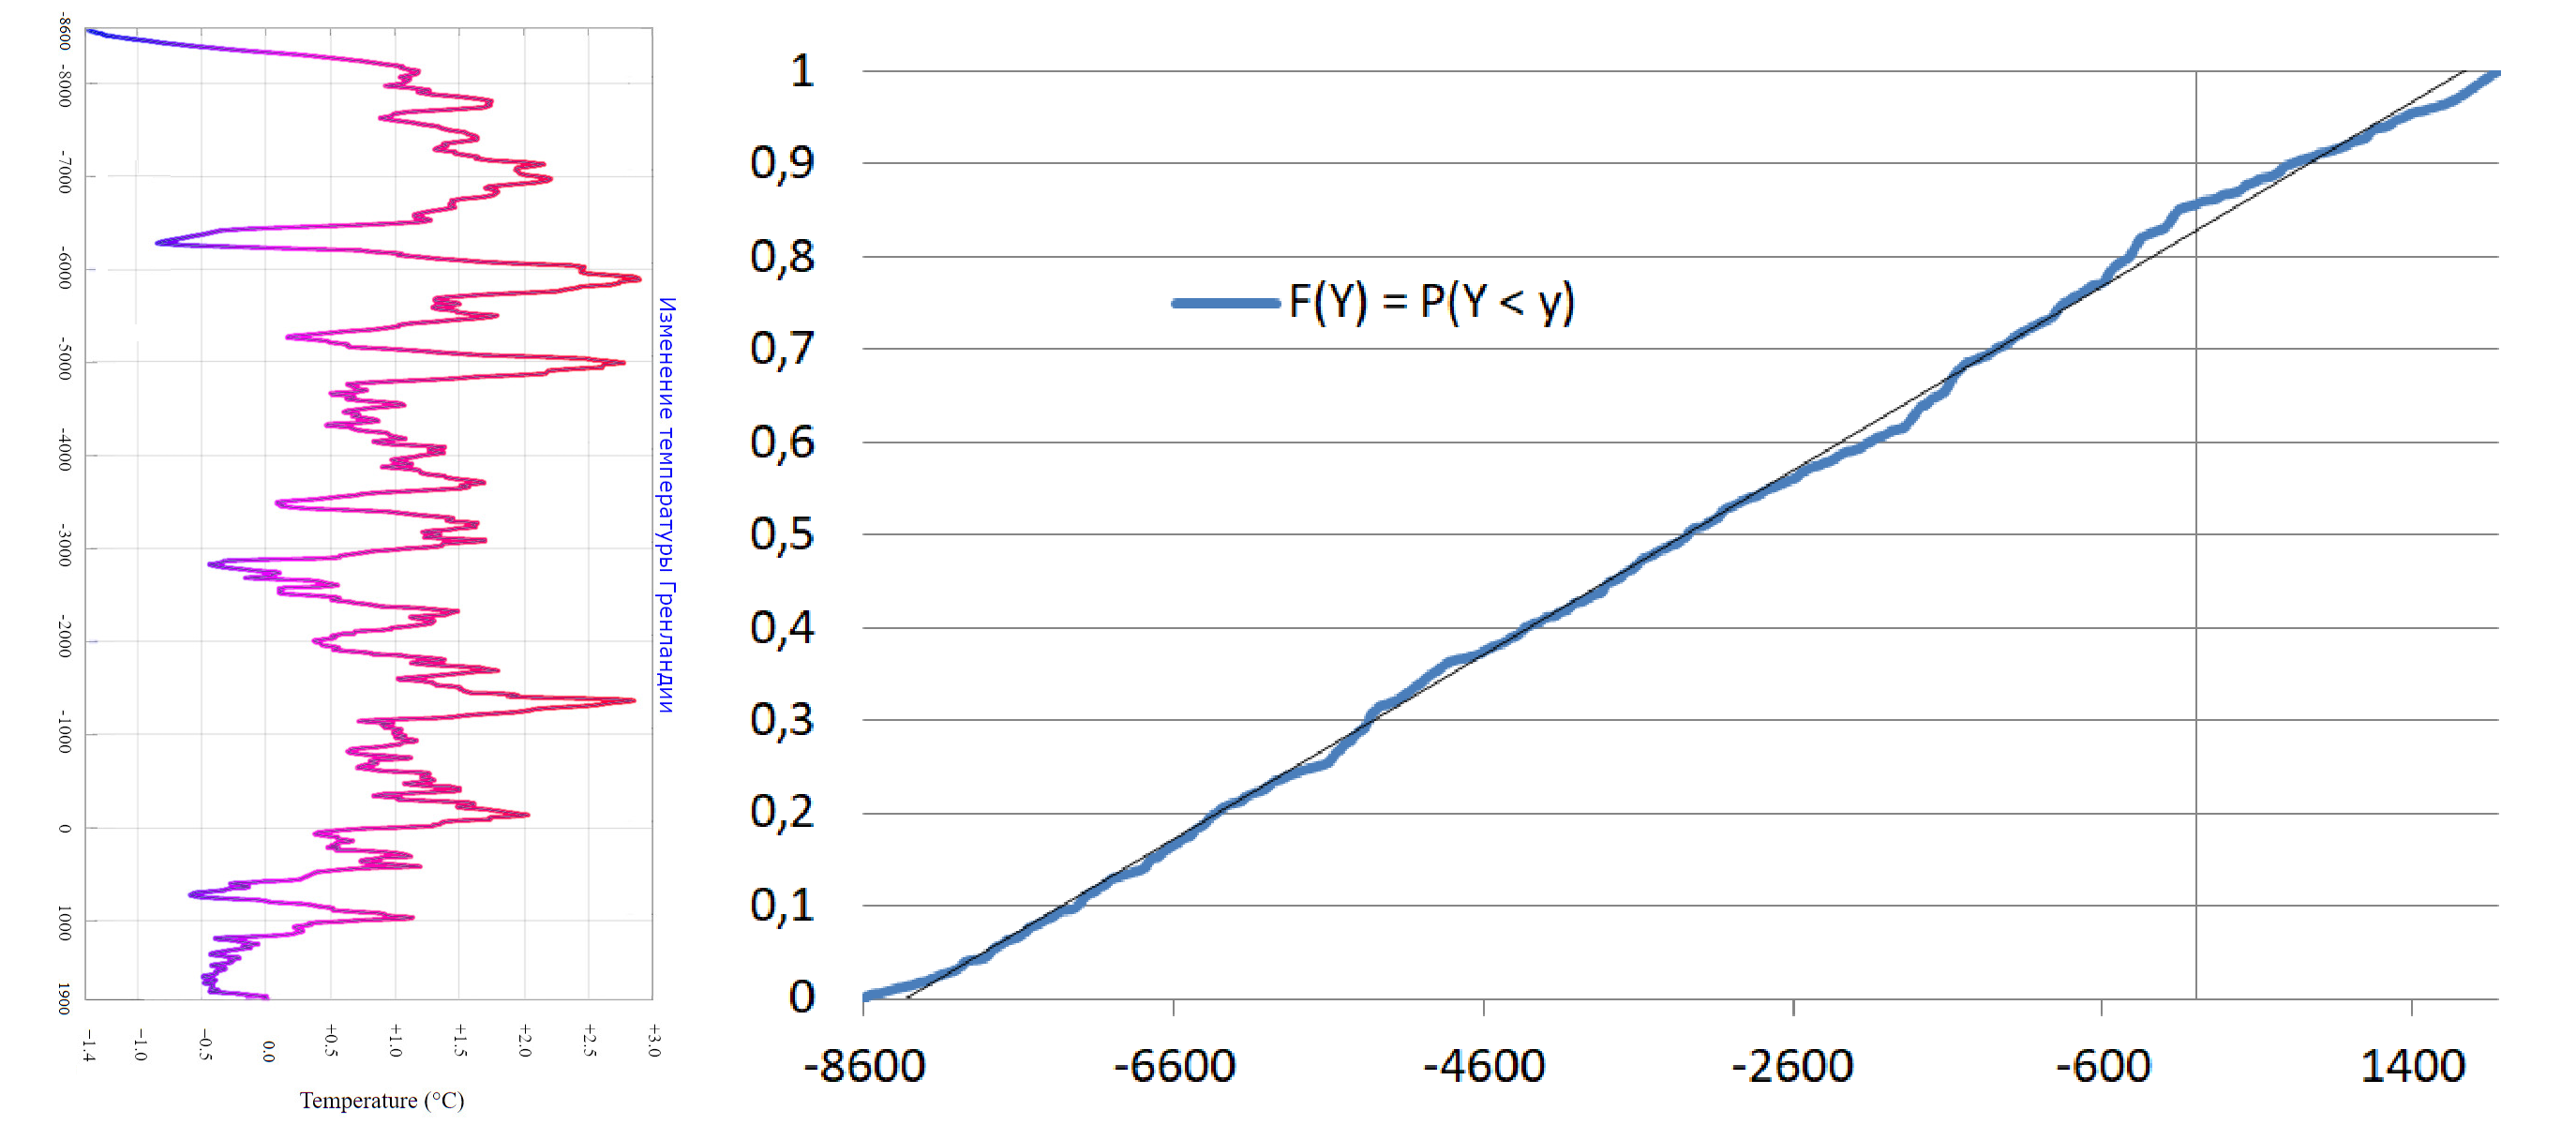 Получившаяся функция распределения почти (несколько раз пережатый JPG сильно засветил некоторые точки + толщина линии не везде одинакова - где-то линия накладывается на себя) верно показывает, что года распределены равномерно